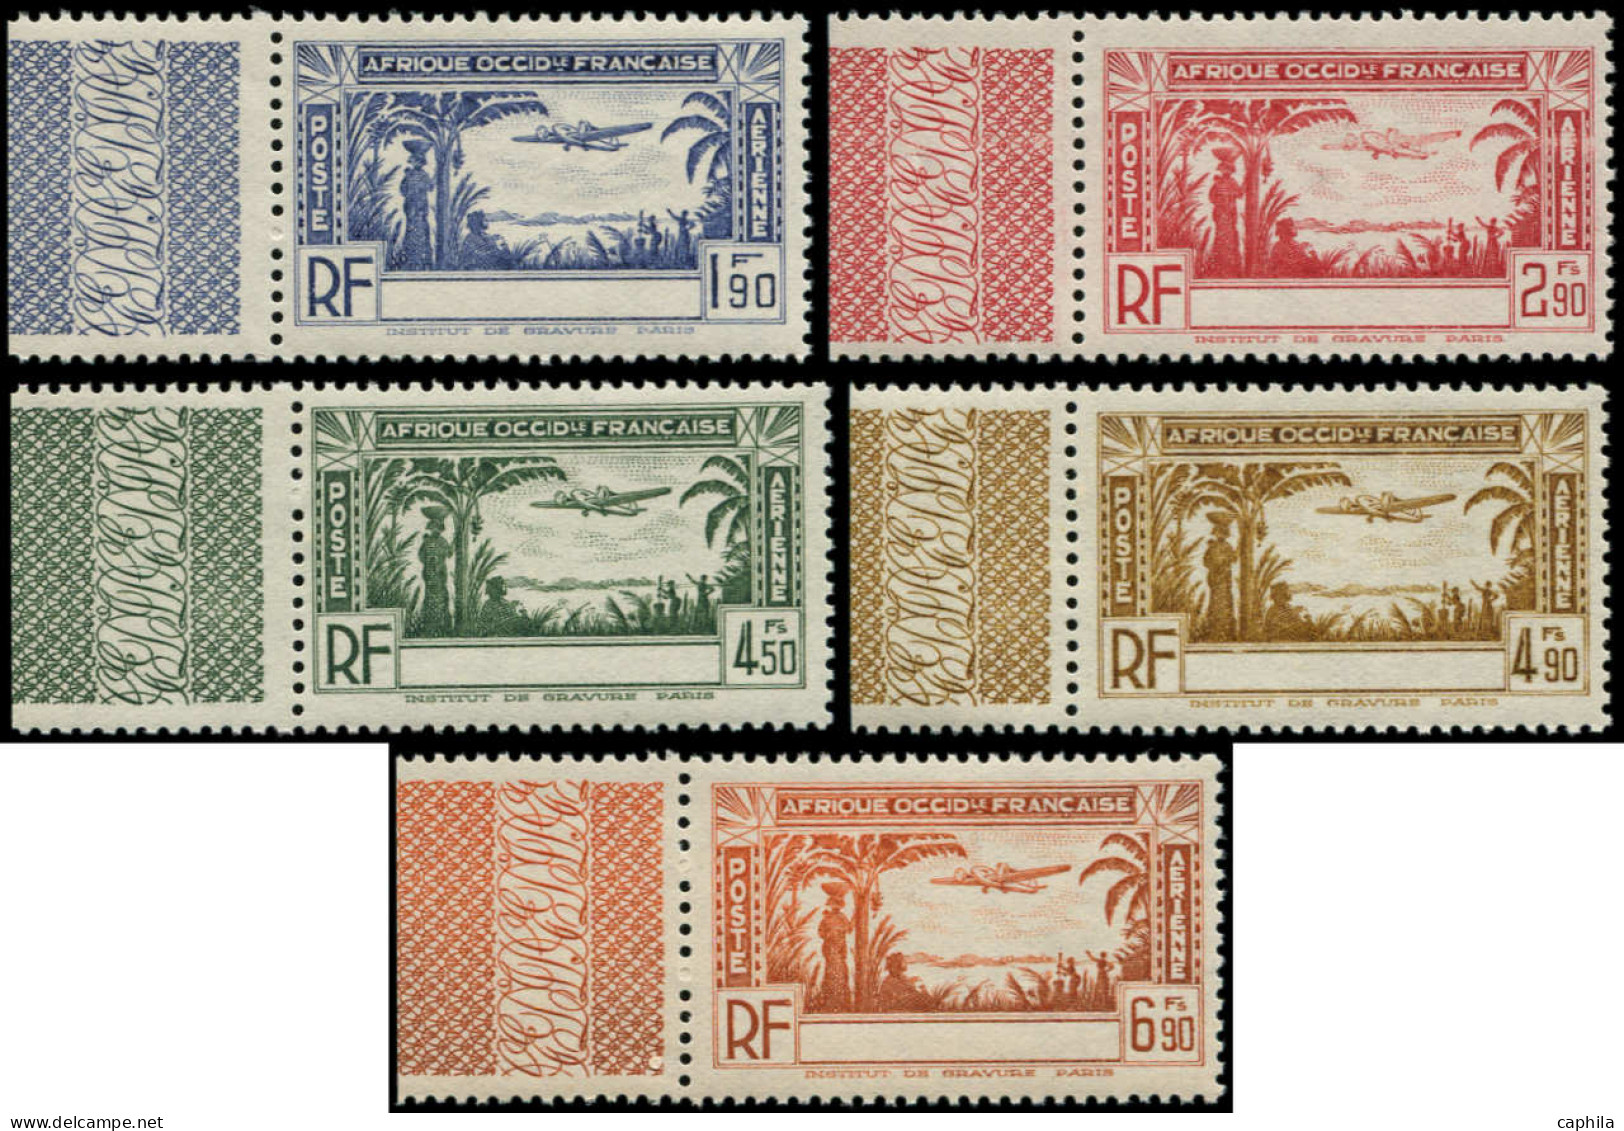 ** COTE D'IVOIRE - Poste Aérienne - 1a/5a, Sans Le Nom Du Pays, Complet - Unused Stamps